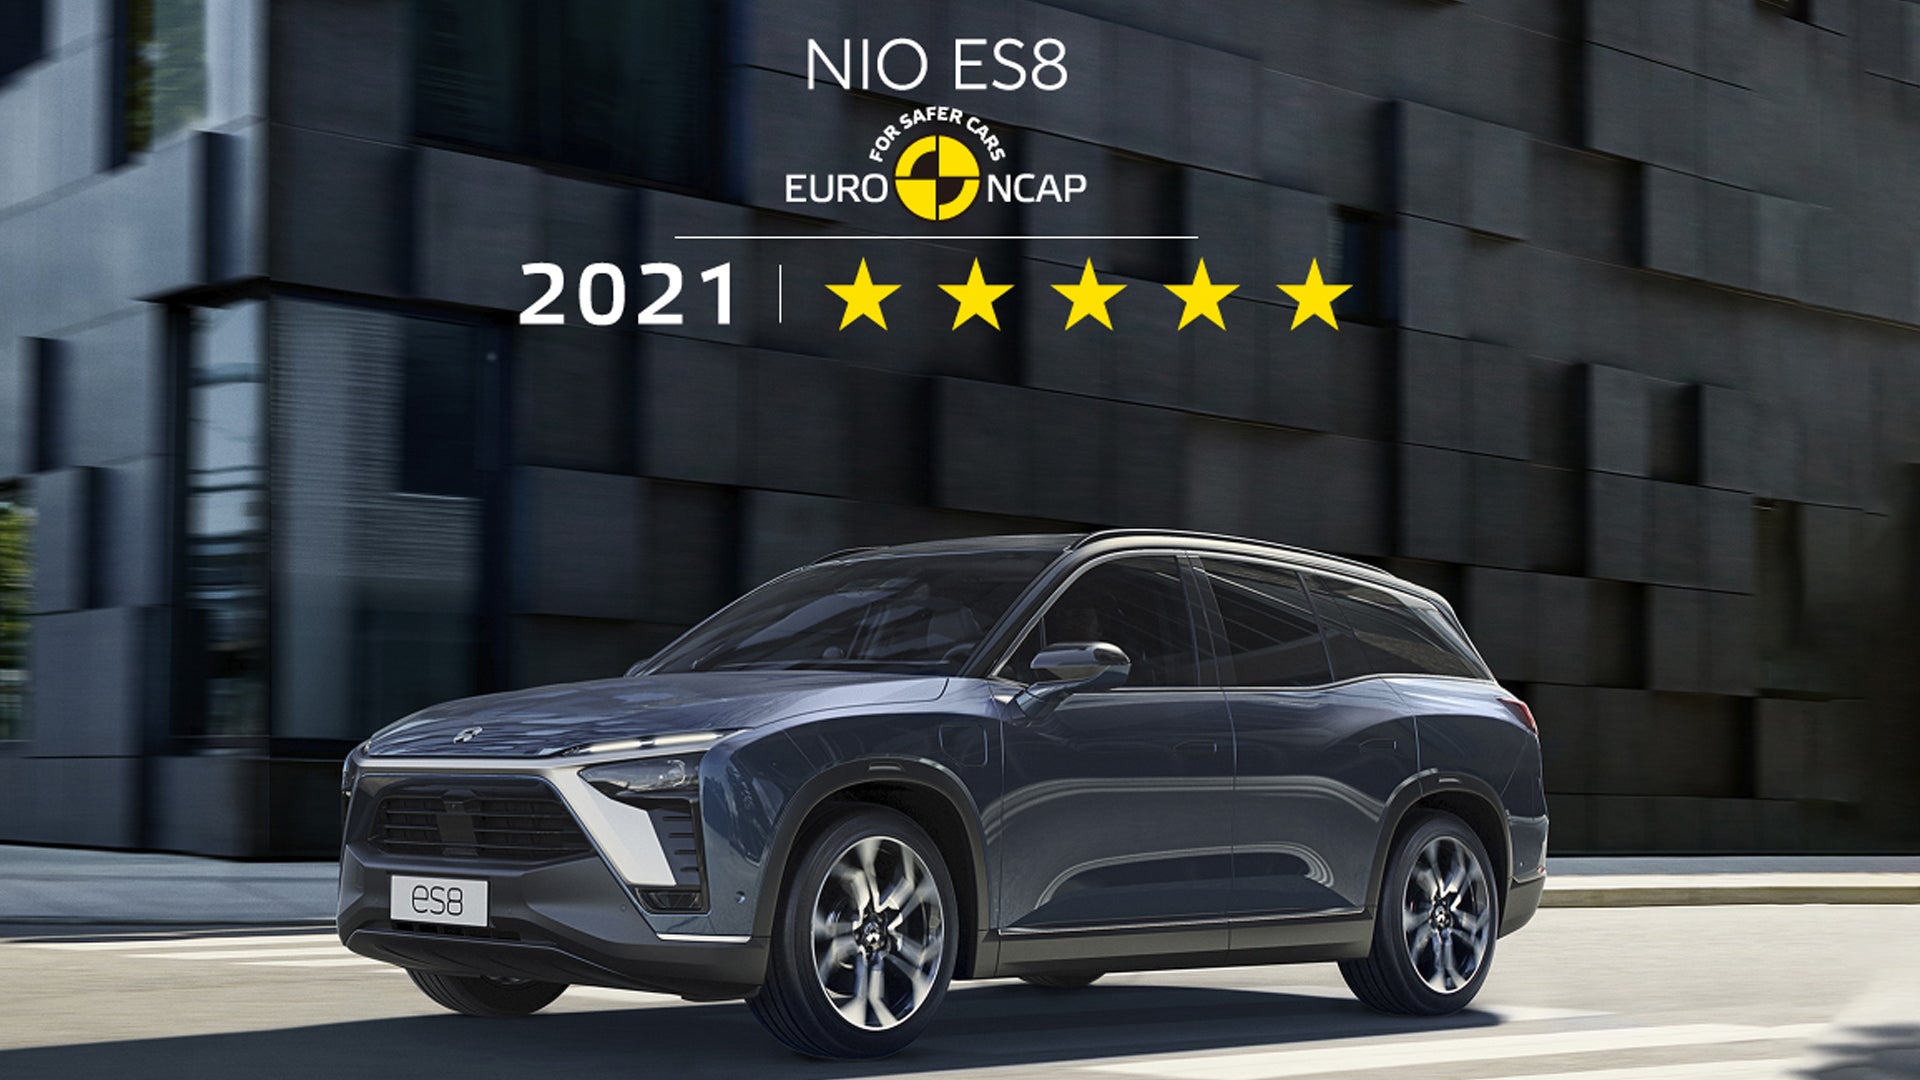 NIO ES8 oppnår 5 stjerner og toppscore i Euro NCAP